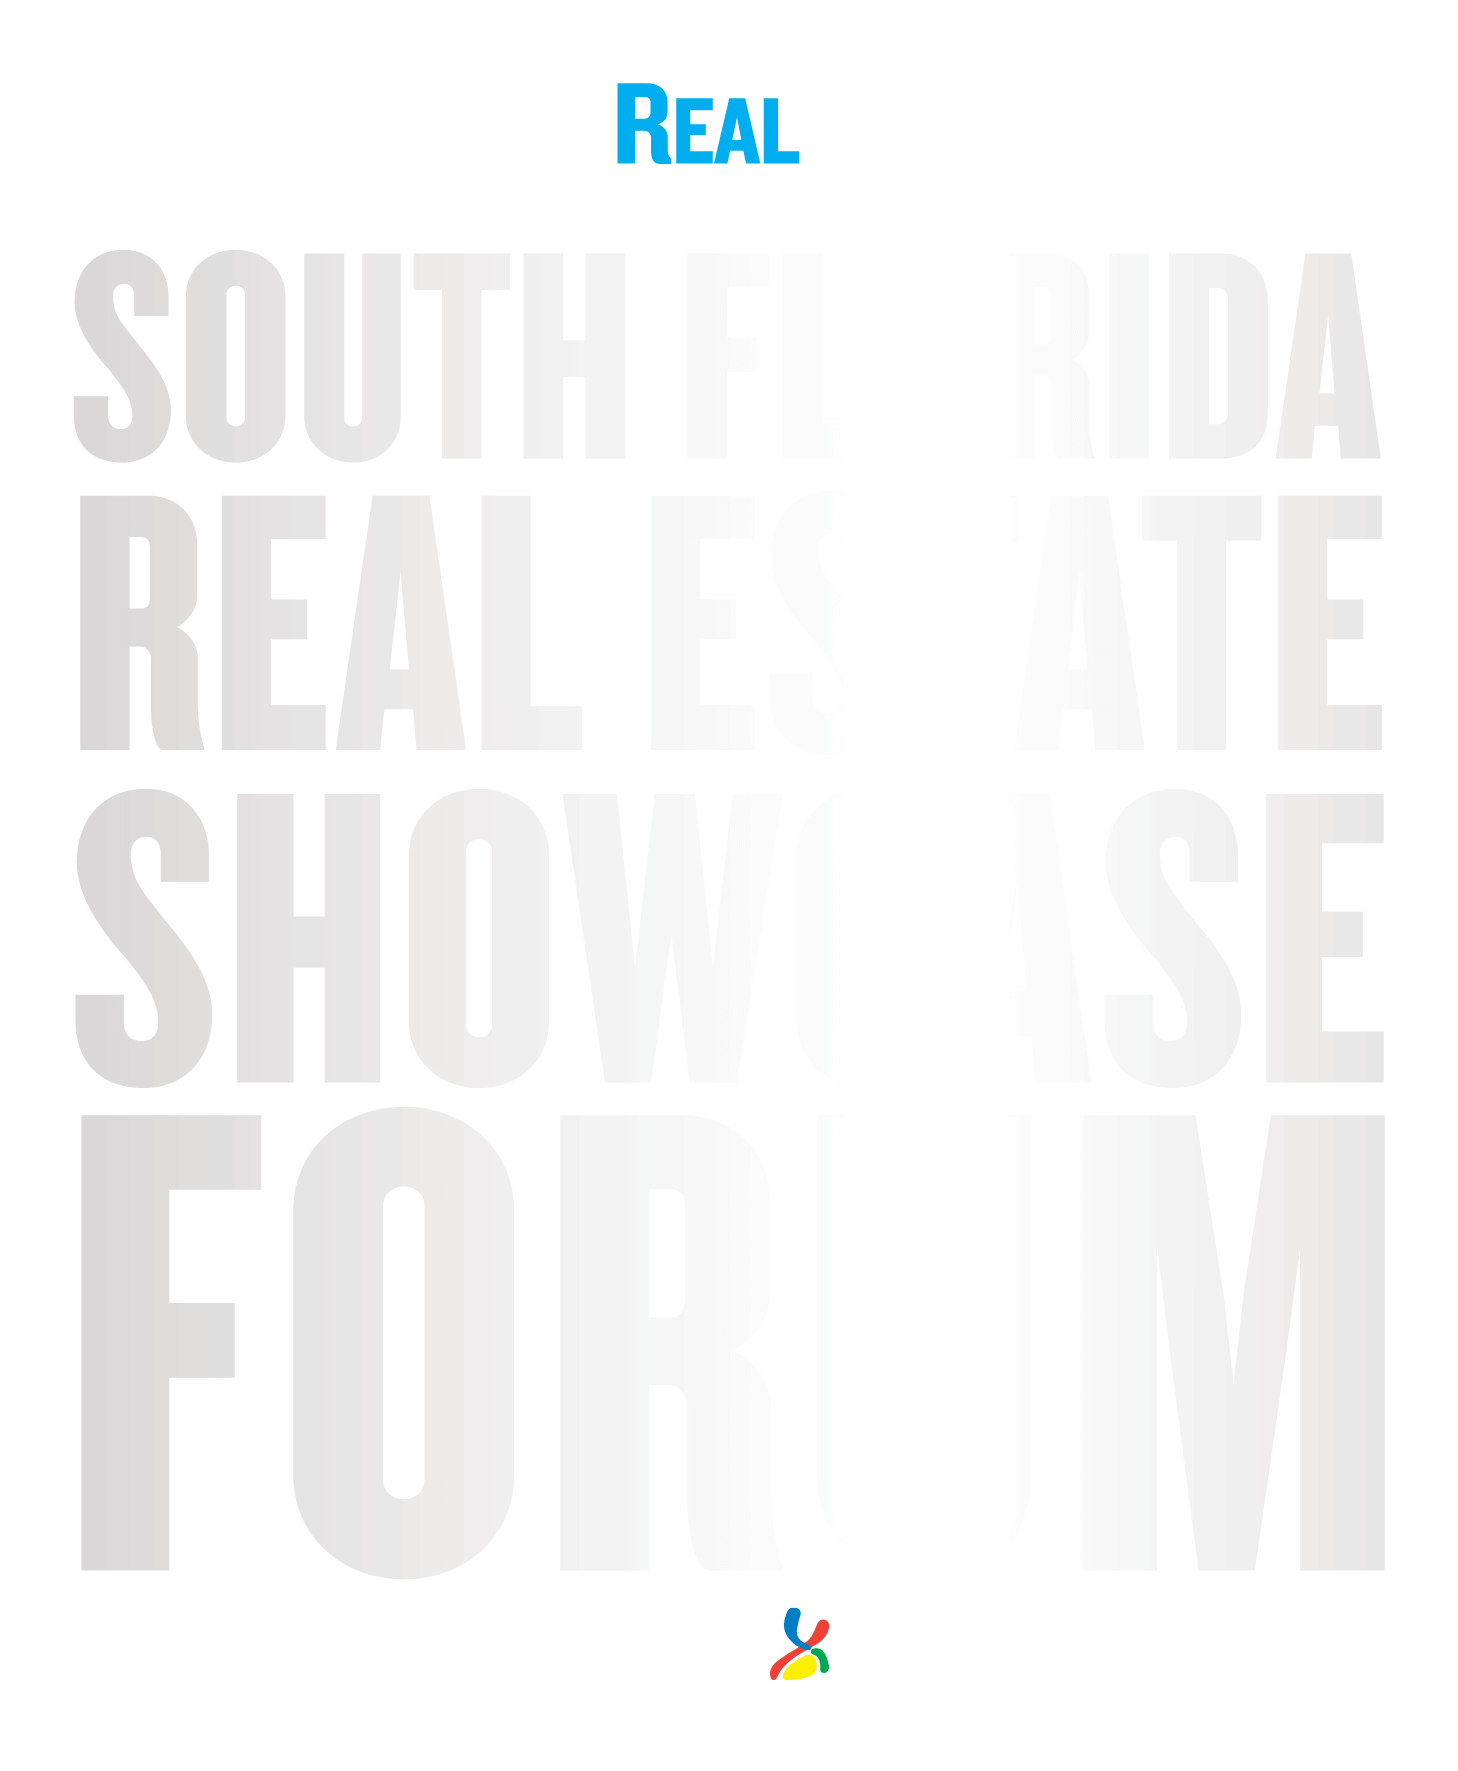 El Foro de Exhibición de Bienes Raíces de Real Deal South Florida.  Presentado por City National Bank.